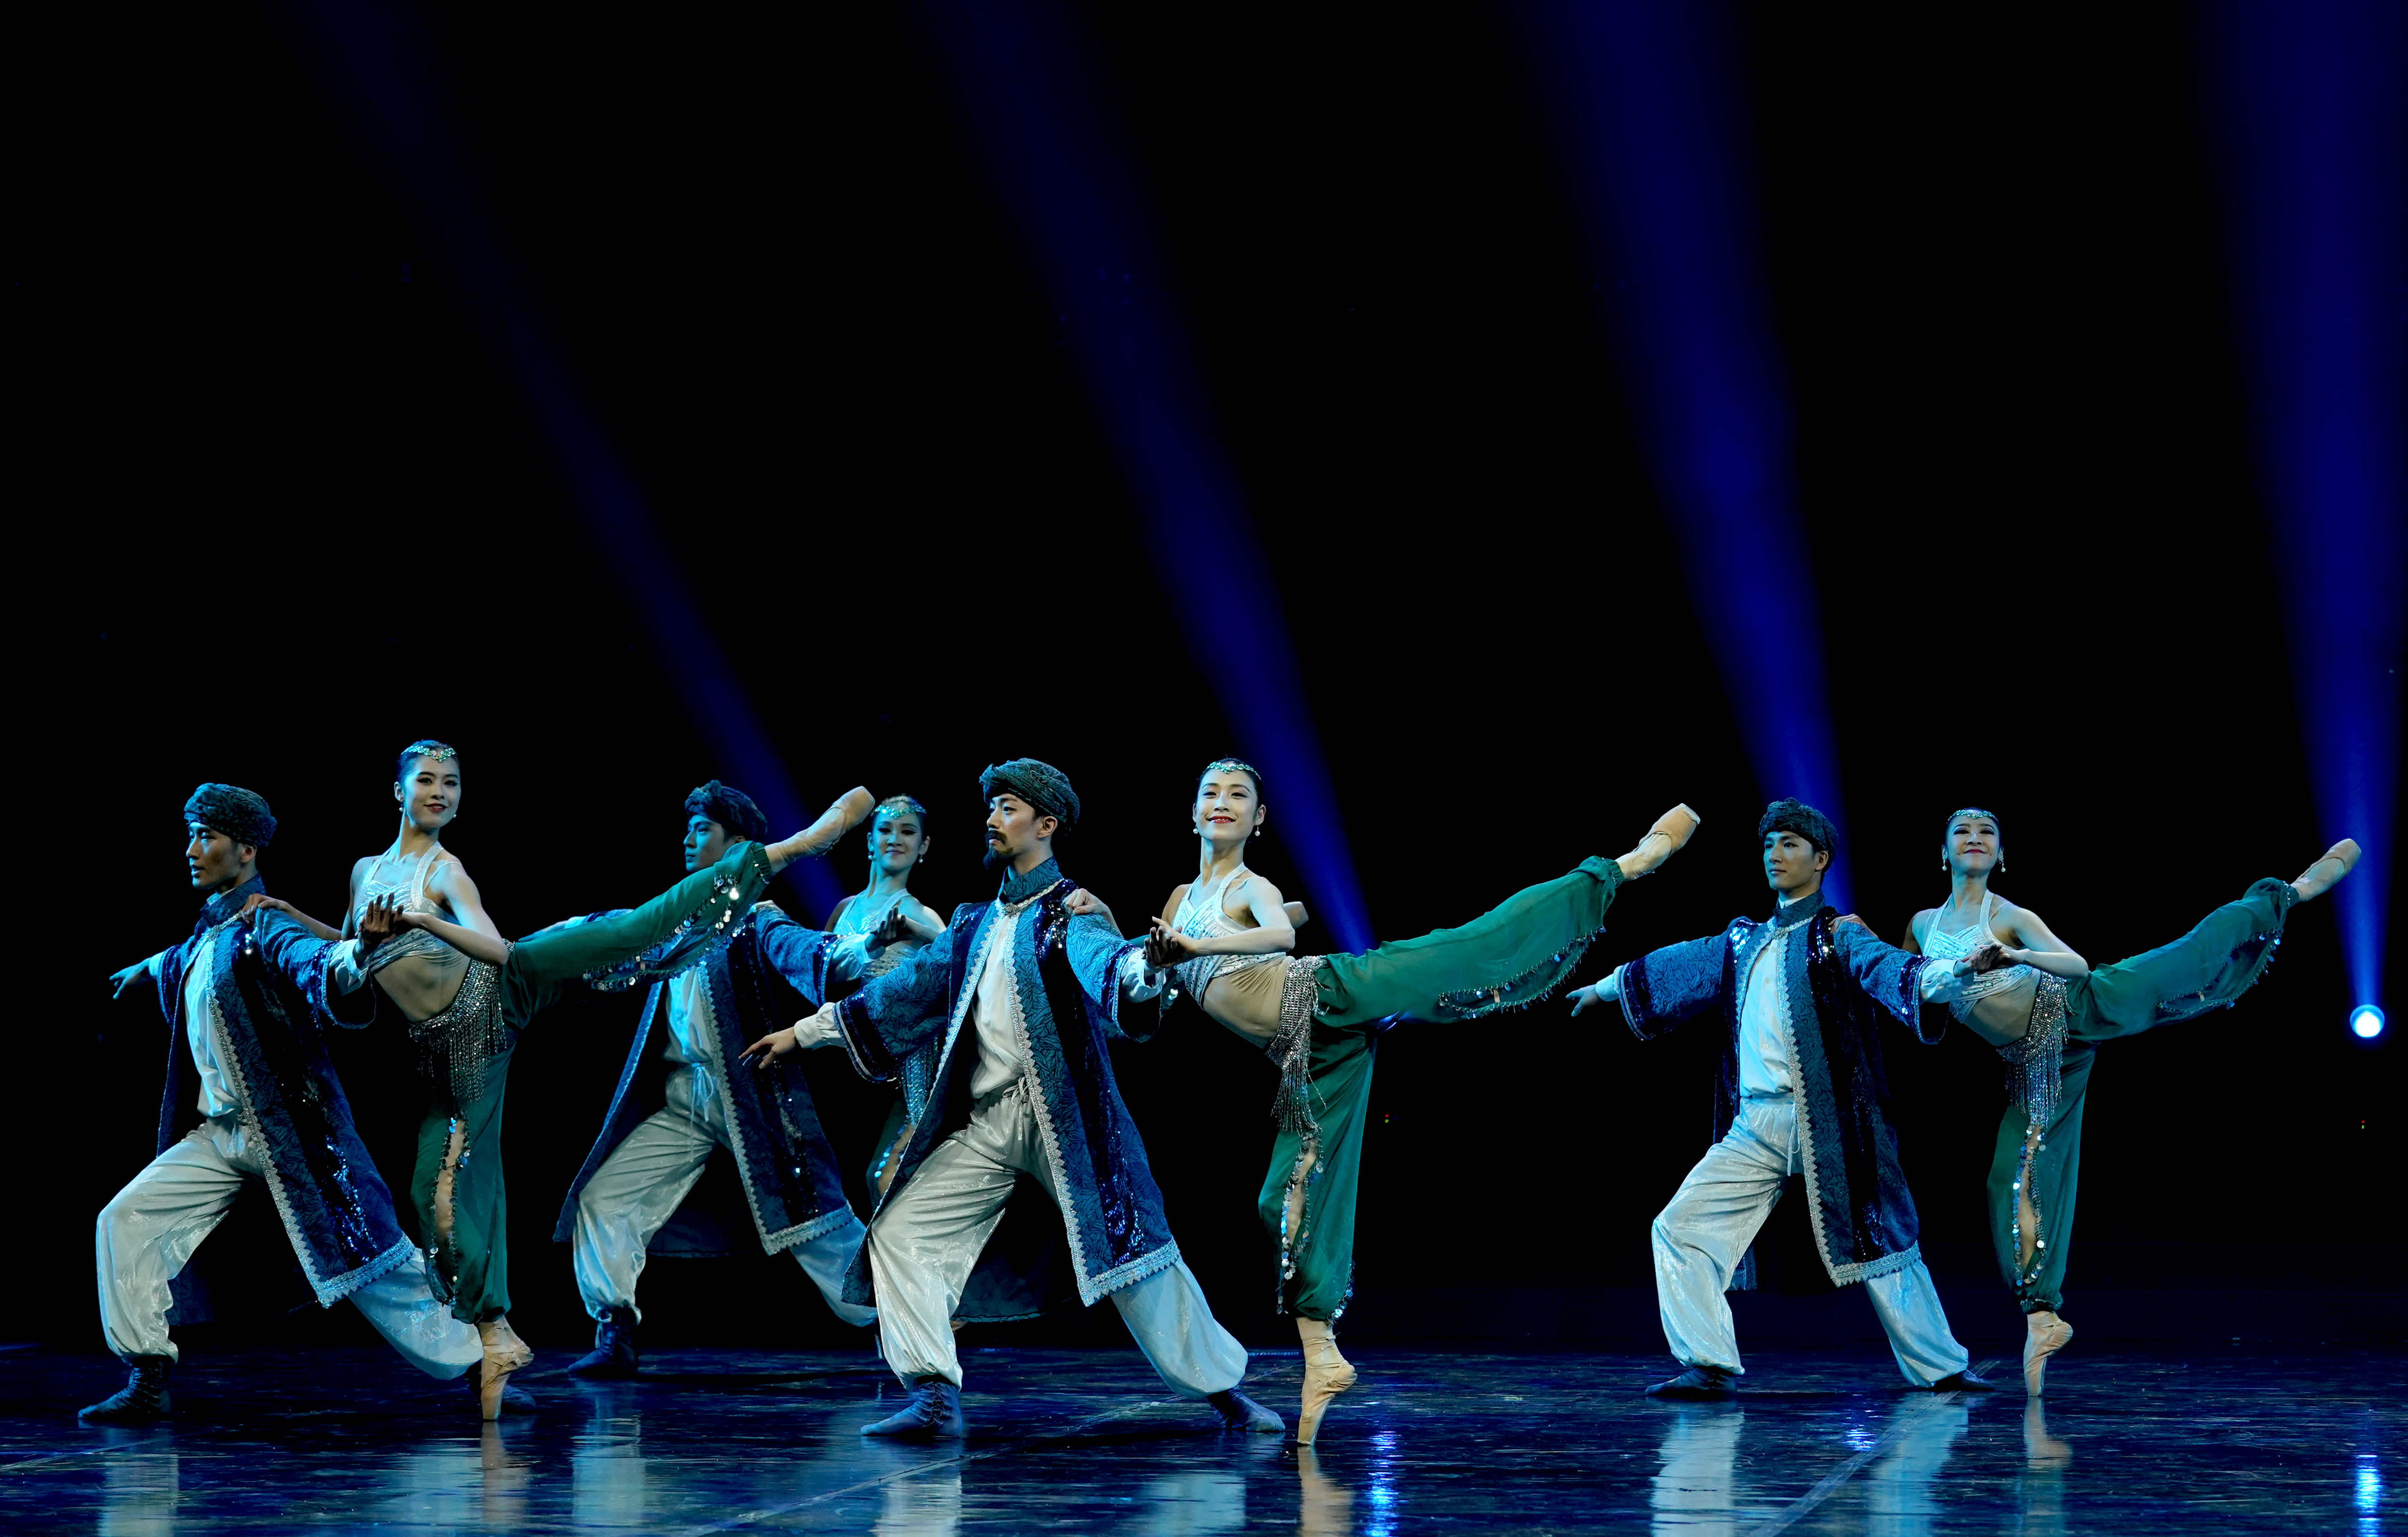 新華社照片，北京，2017年12月31日　　皮爾·卡丹成立70周年發布會在京舉行　　12月31日，上海芭蕾舞團演員在發布會上表演。　　當日，皮爾·卡丹成立70周年發布會在北京舉行，這場主題為“馬可波羅號”的發布會融合了芭蕾舞劇的元素，上海芭蕾舞團演員和時裝模特穿插同臺表演，上演了一場精彩的年度時尚大秀。　　新華社記者陳建力攝